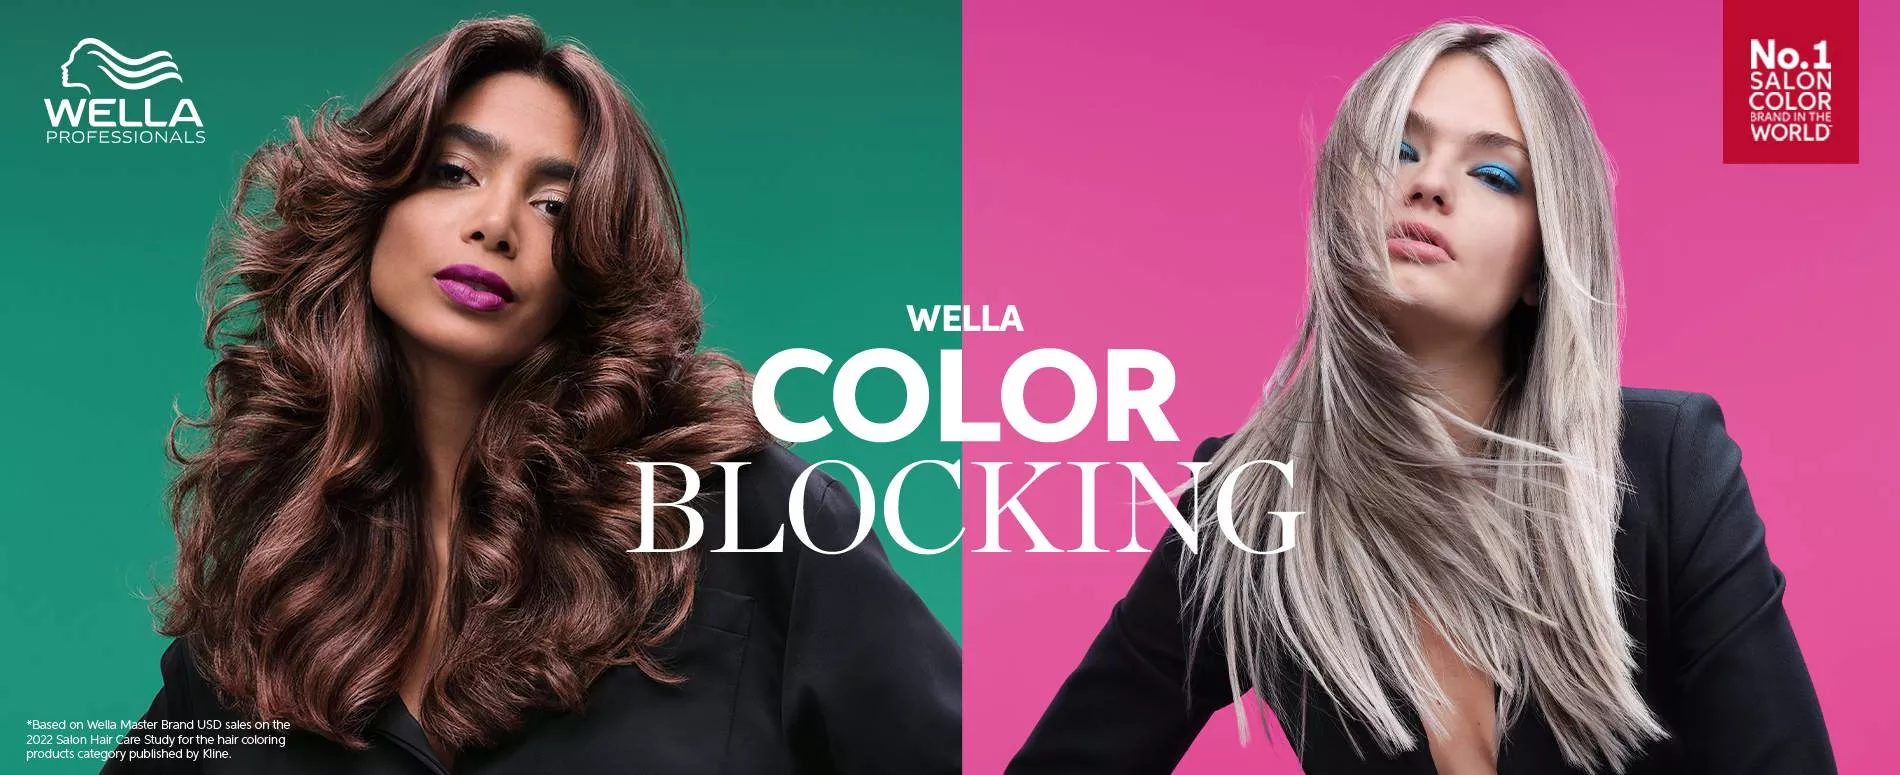 Una modelo morena sobre un fondo verde y una modelo rubia sobre un fondo rosa, para representar el Color Blocking de Wella